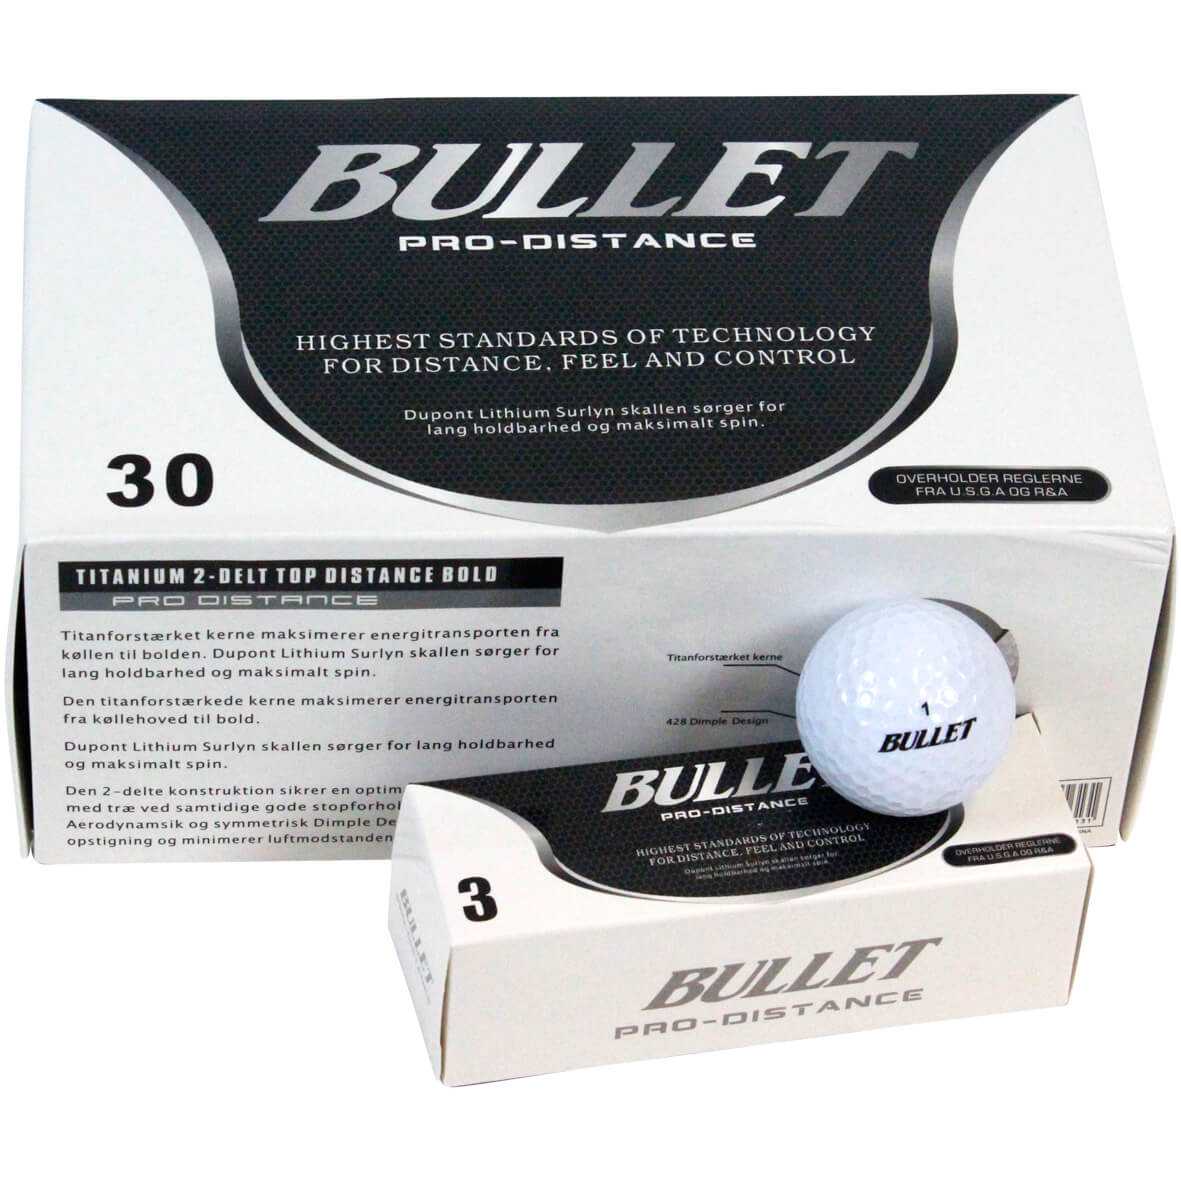 Bullet golfbollpaket – 30